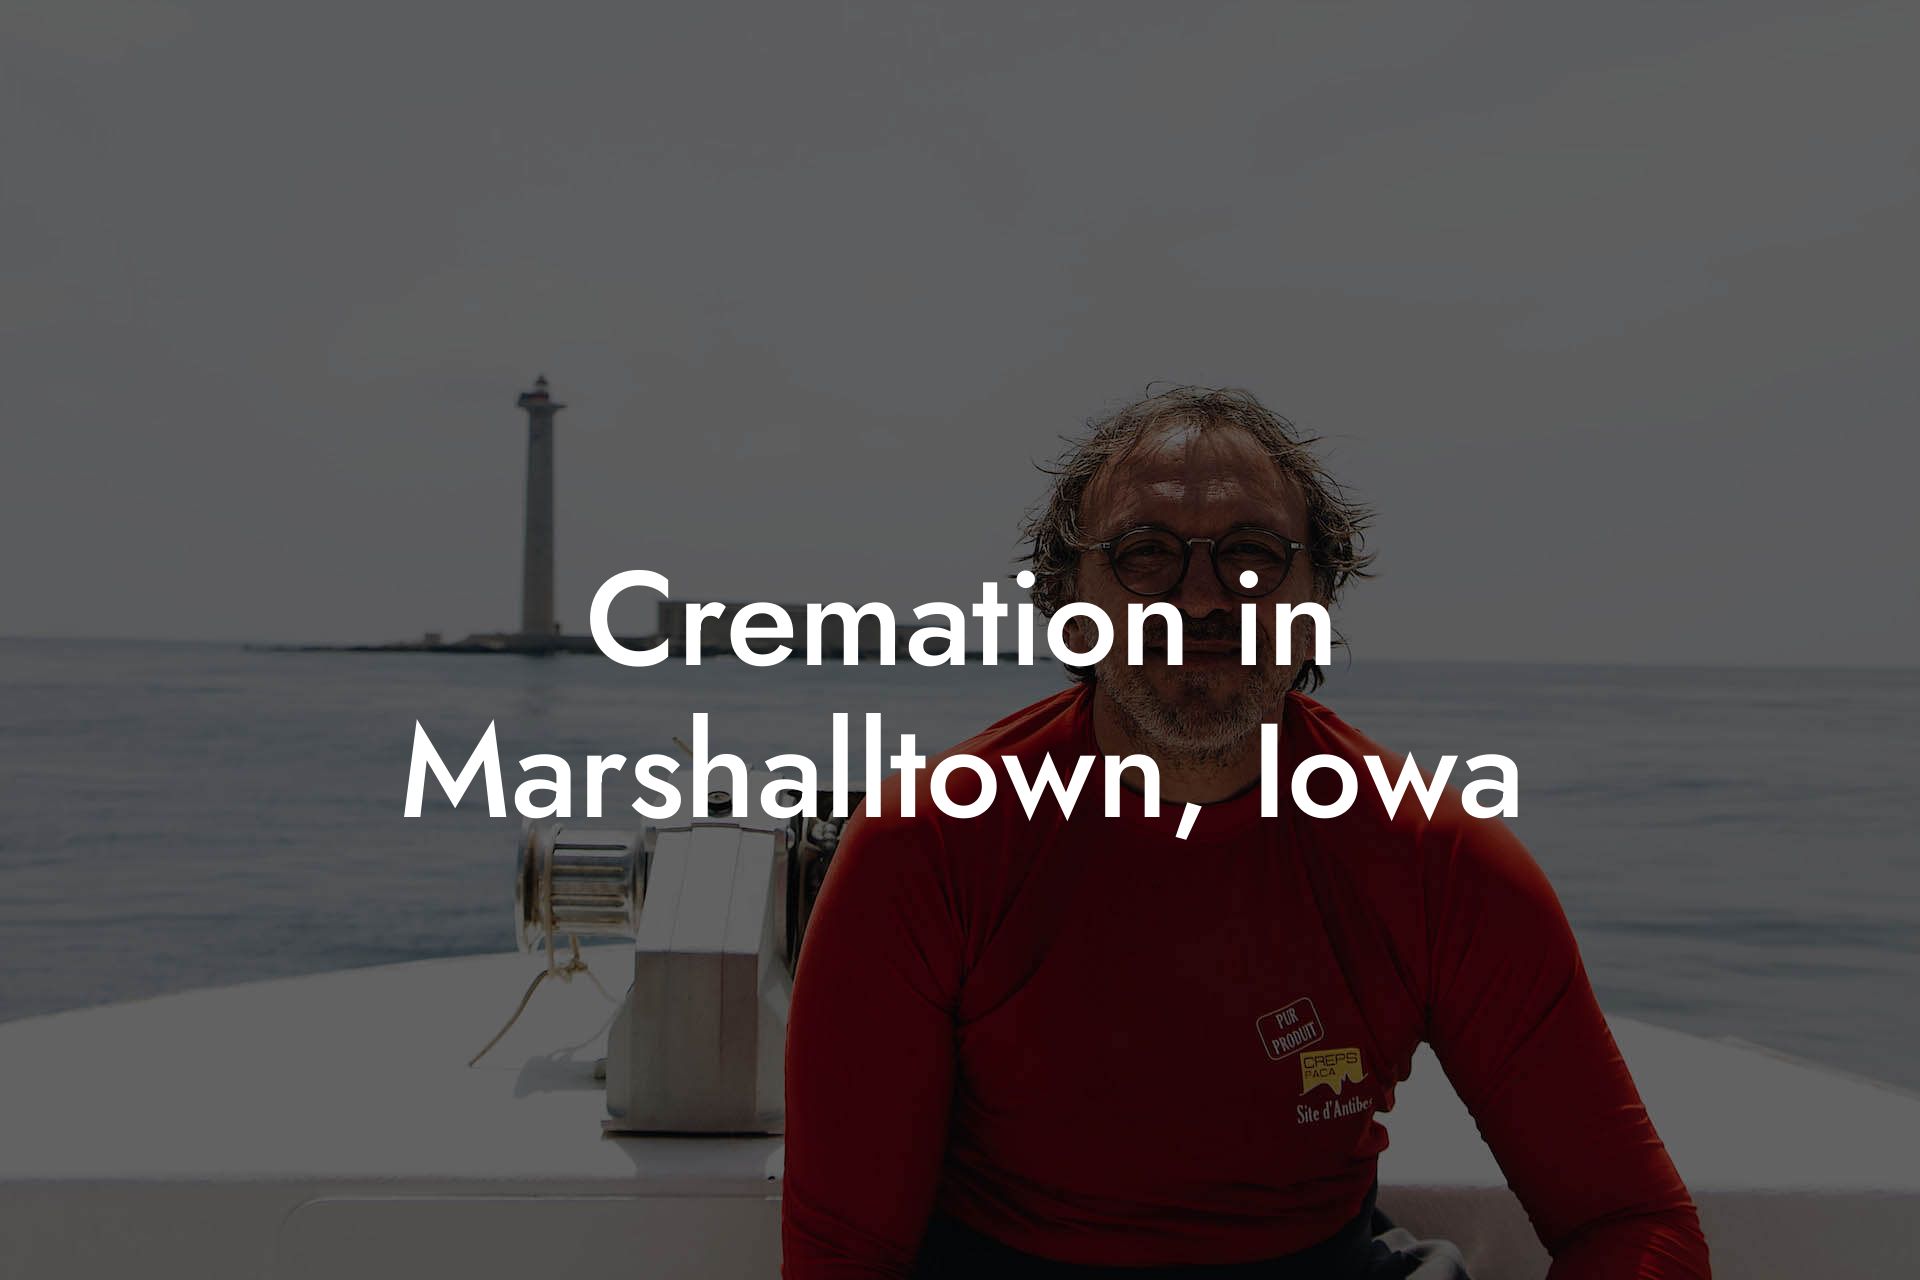 Cremation in Marshalltown, Iowa